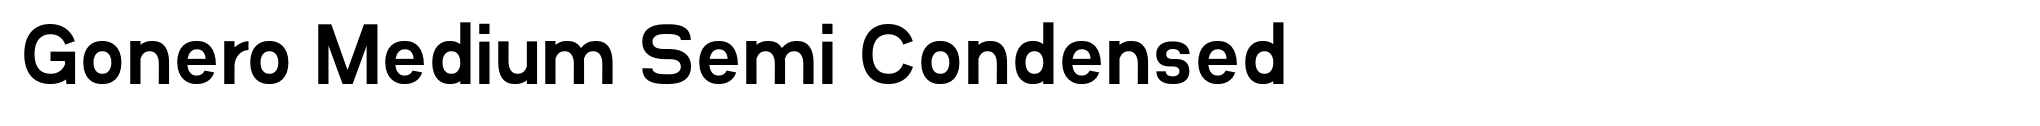 Gonero Medium Semi Condensed image